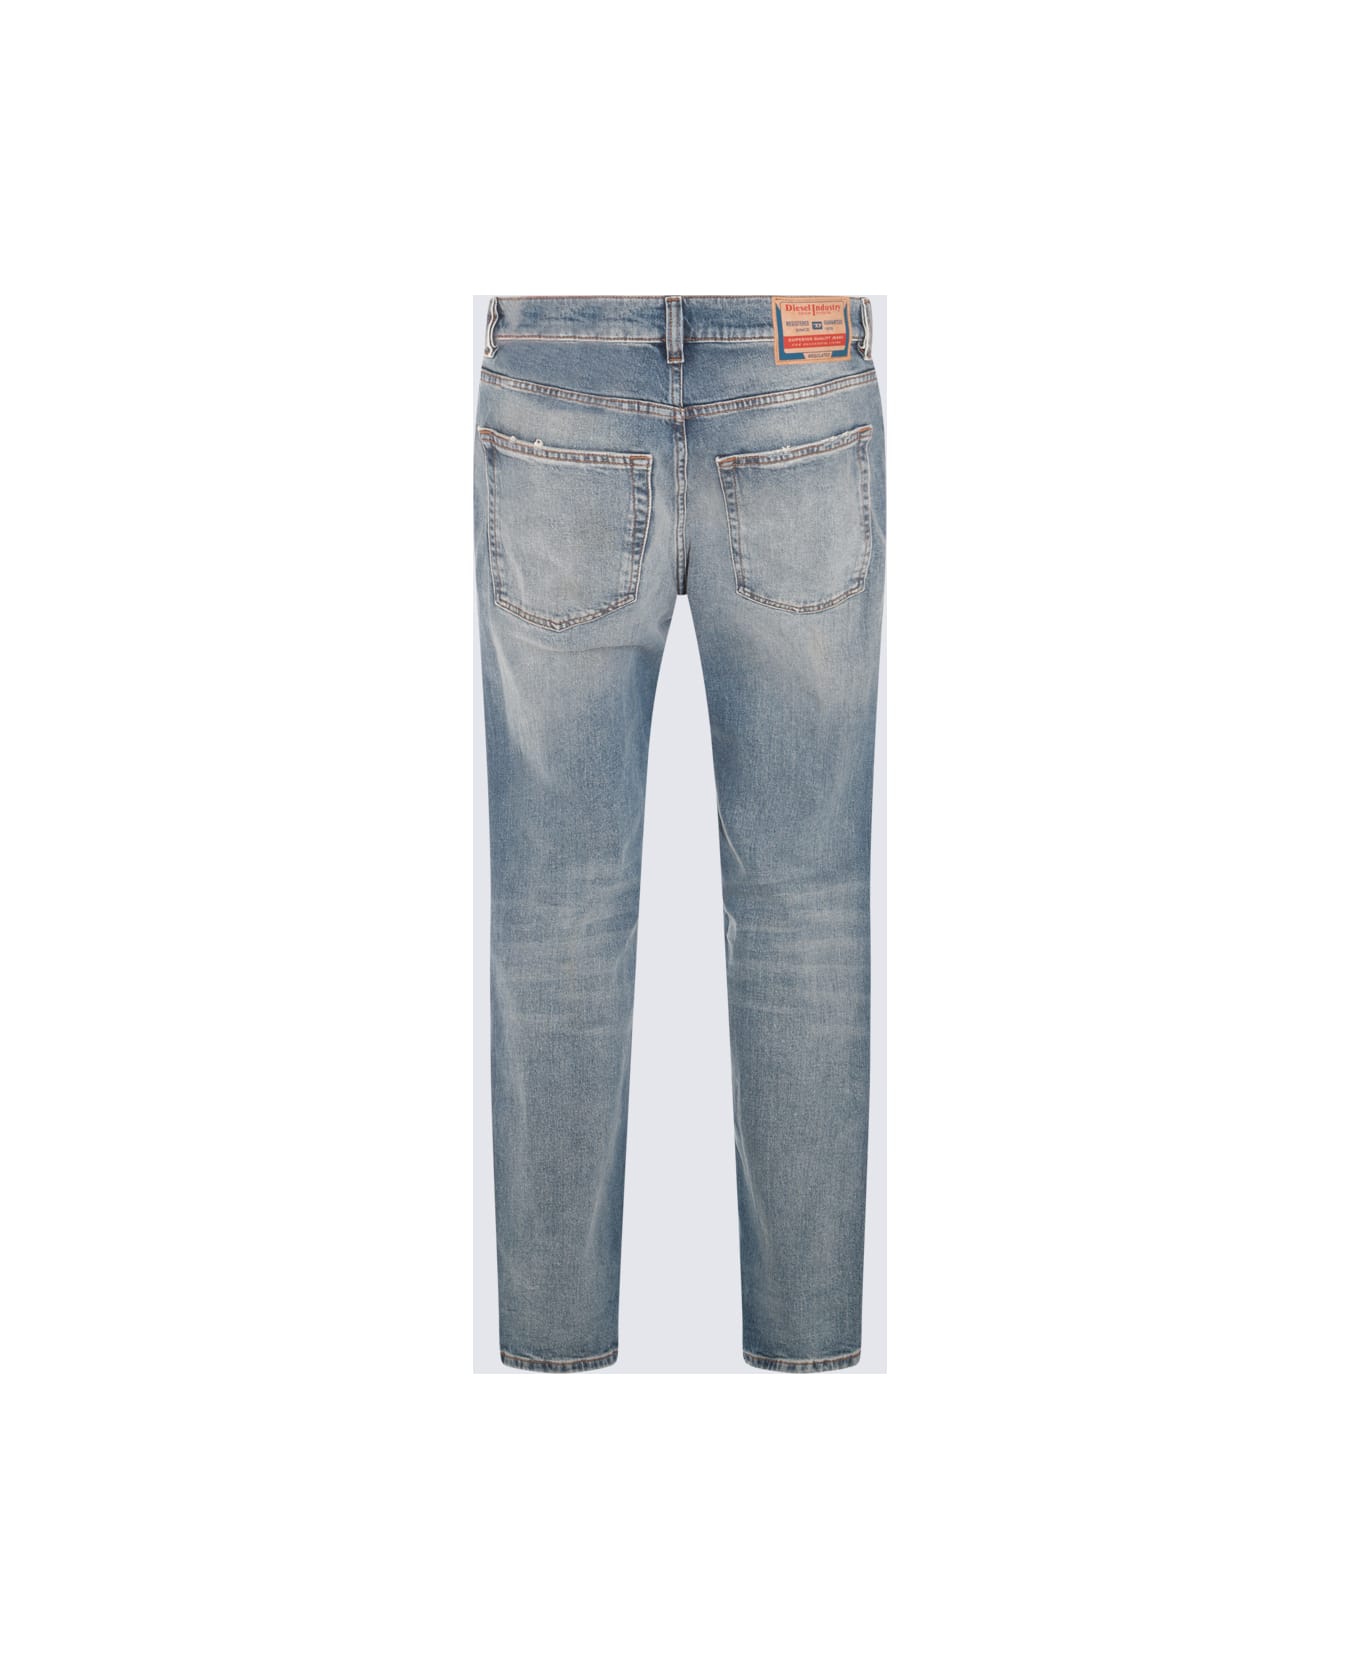 Diesel Blue Cotton Denim Jeans - 01